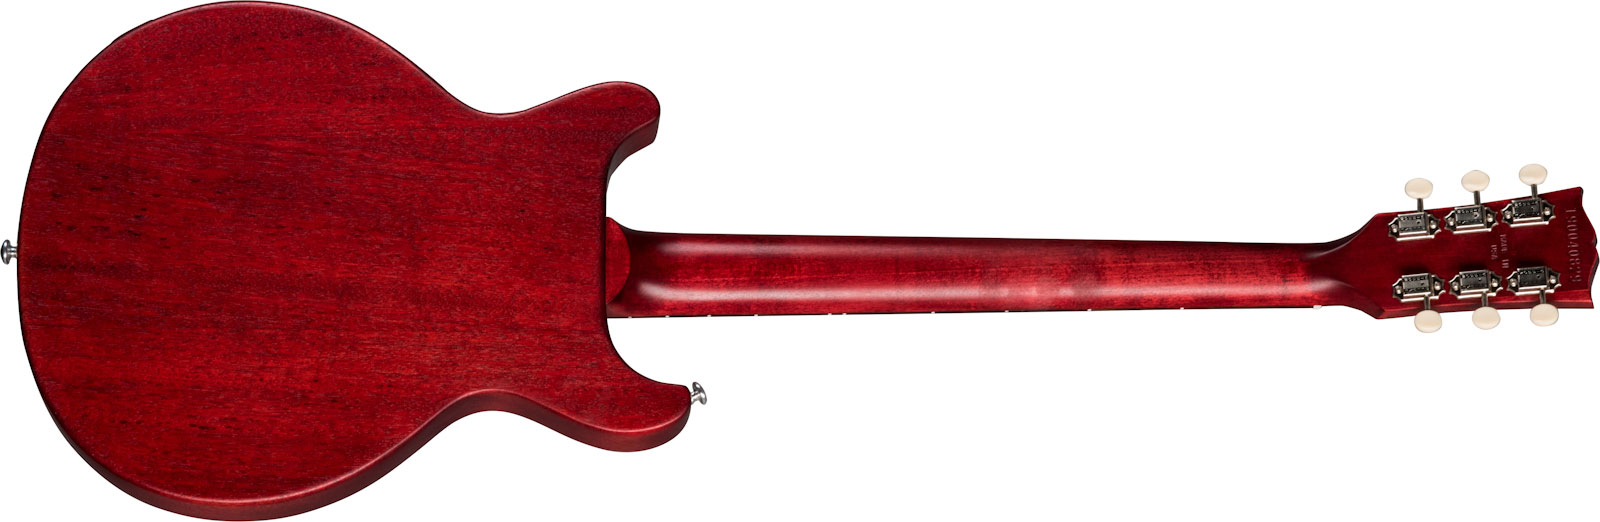 Gibson Les Paul Special Tribute Dc Modern 2p90 Ht Rw - Worn Cherry - Guitare Électrique Double Cut - Variation 1